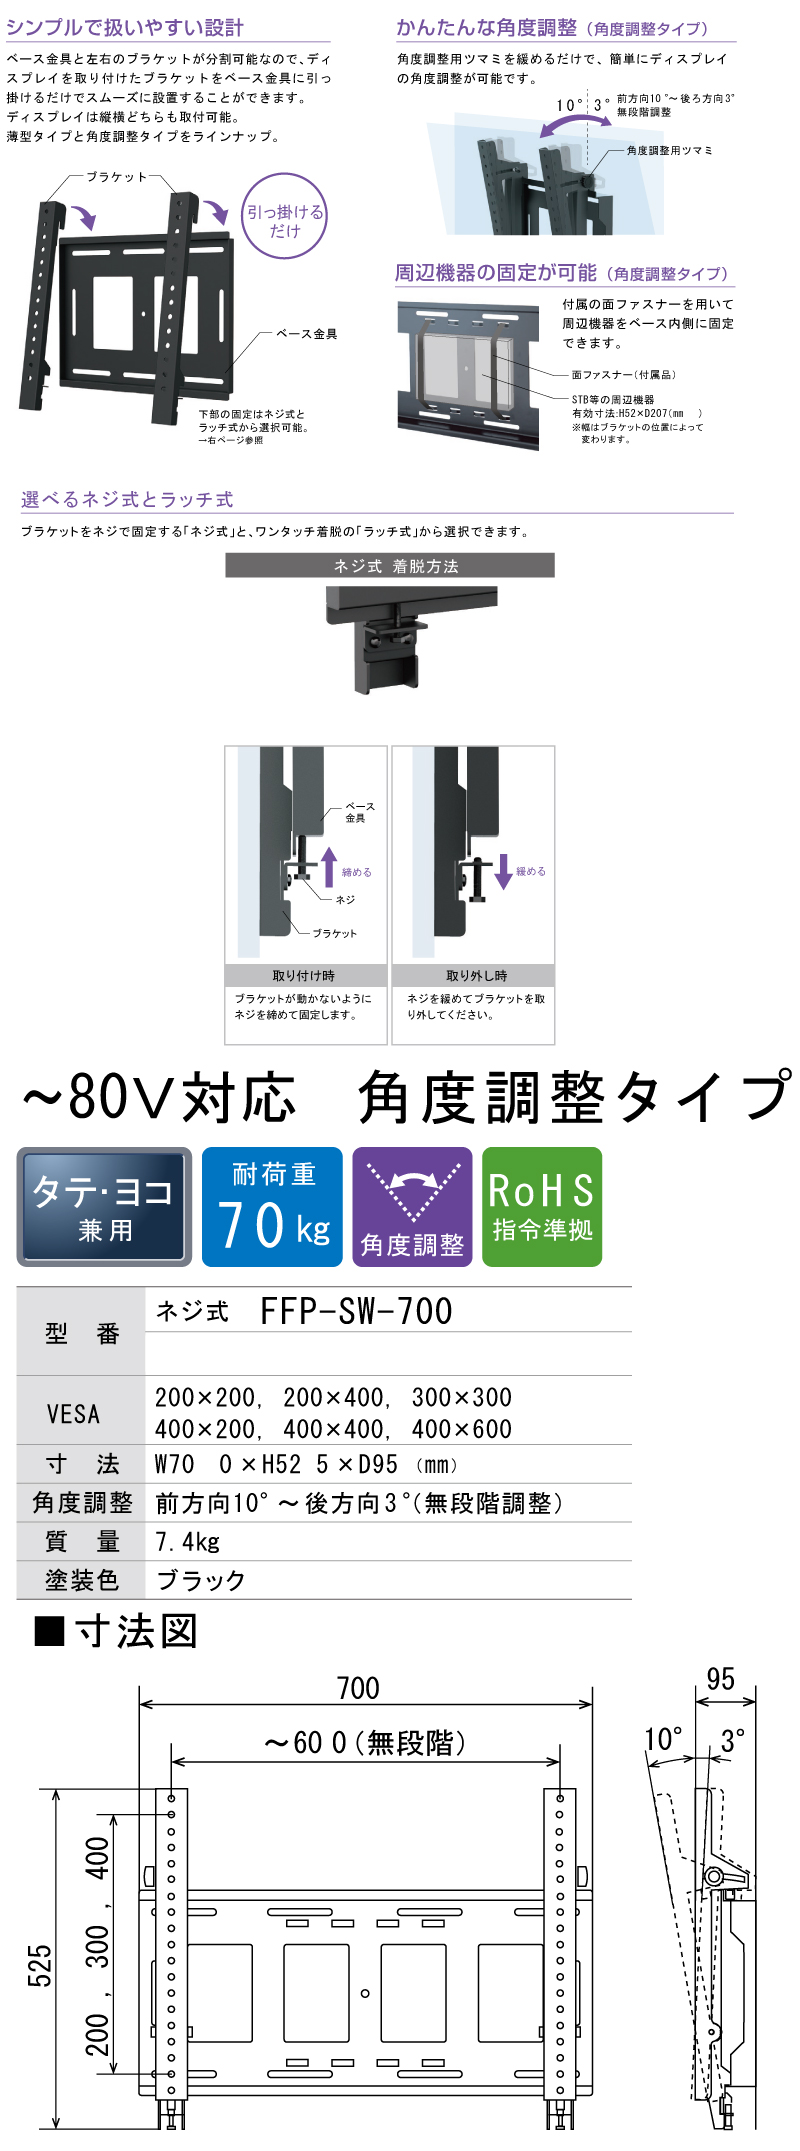 日本機器通販 / 日本フォームサービス デジタルサイネージ壁掛け金具 